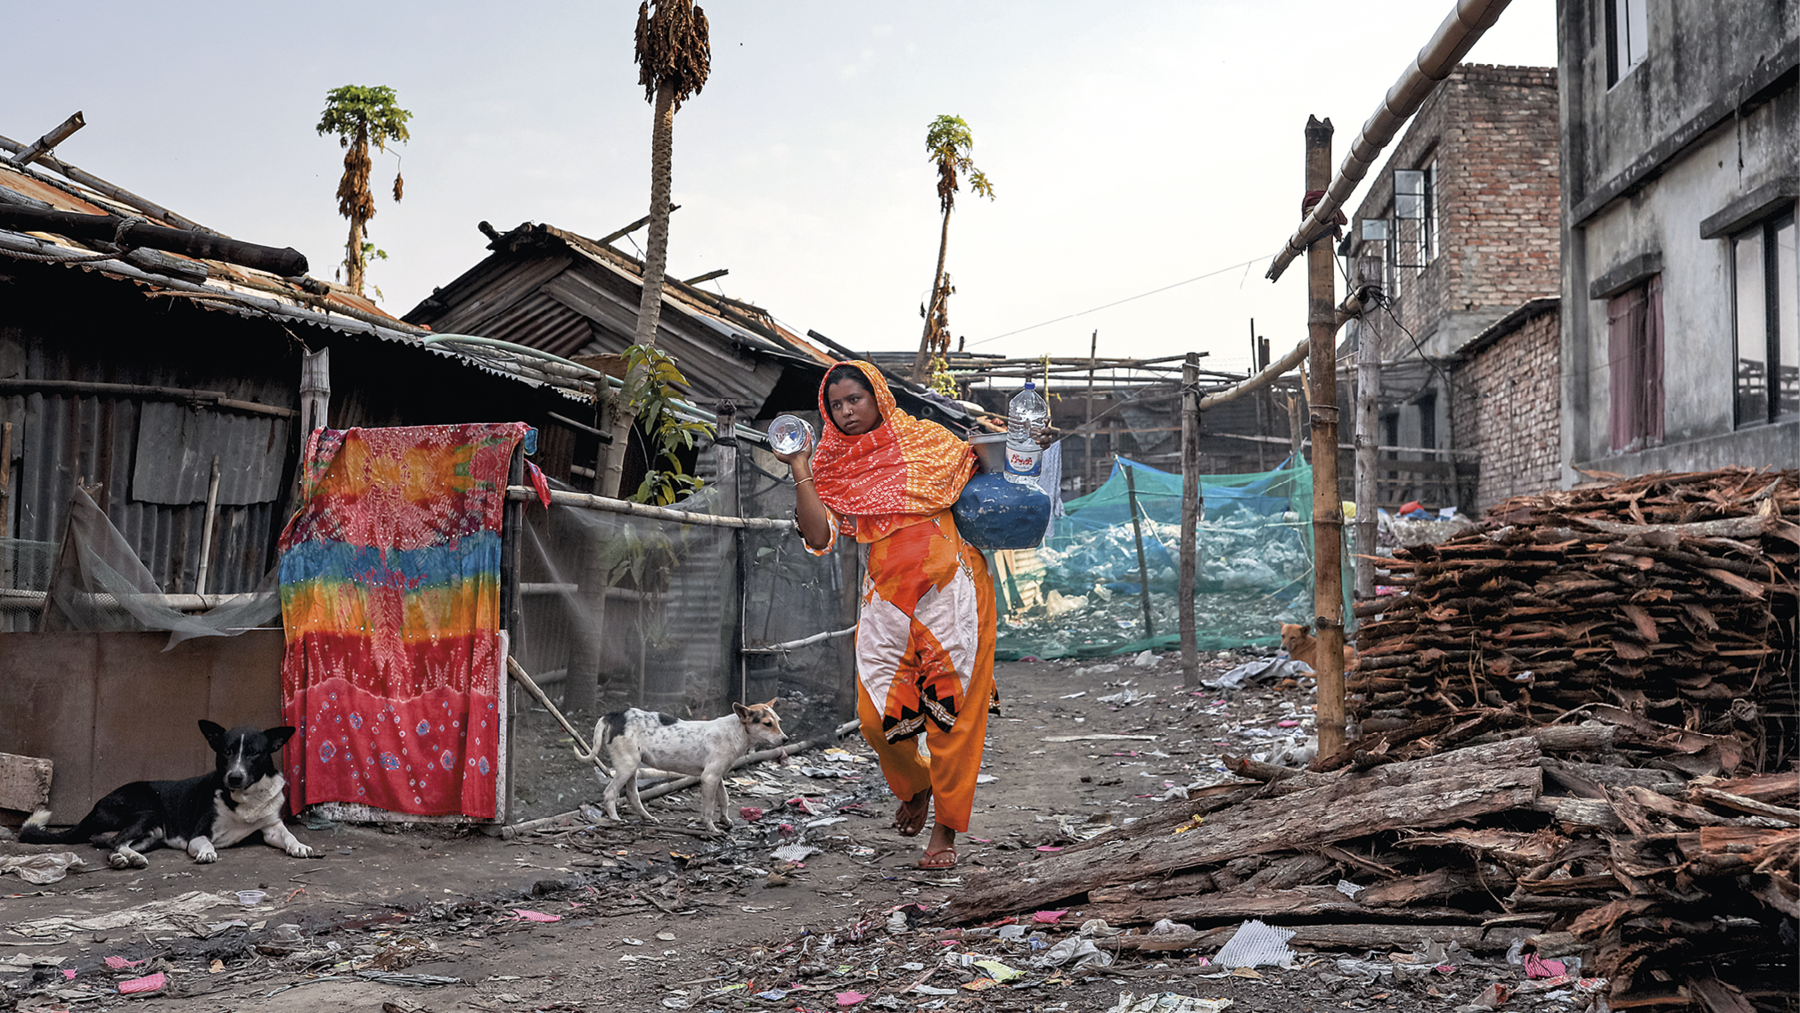 Fotografia. No centro, uma mulher de roupa e lenço laranja na cabeça caminhando com sacola e garrafas de água nas duas mãos. Ao redor dela, chão de terra com entulhos, lixo construções precárias. Dois cachorros estão na rua. Acima, céu com nuvens.